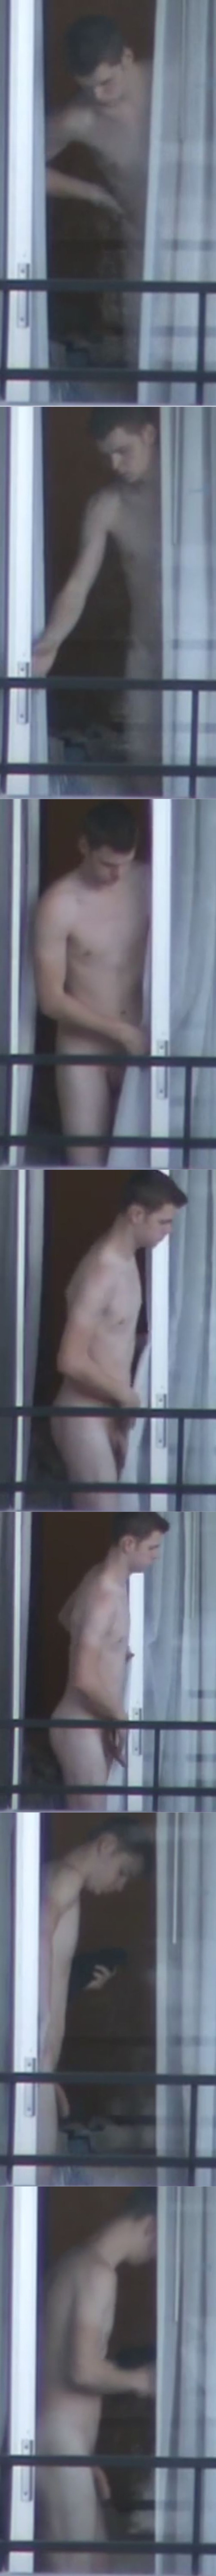 guy caught naked holiday balcony